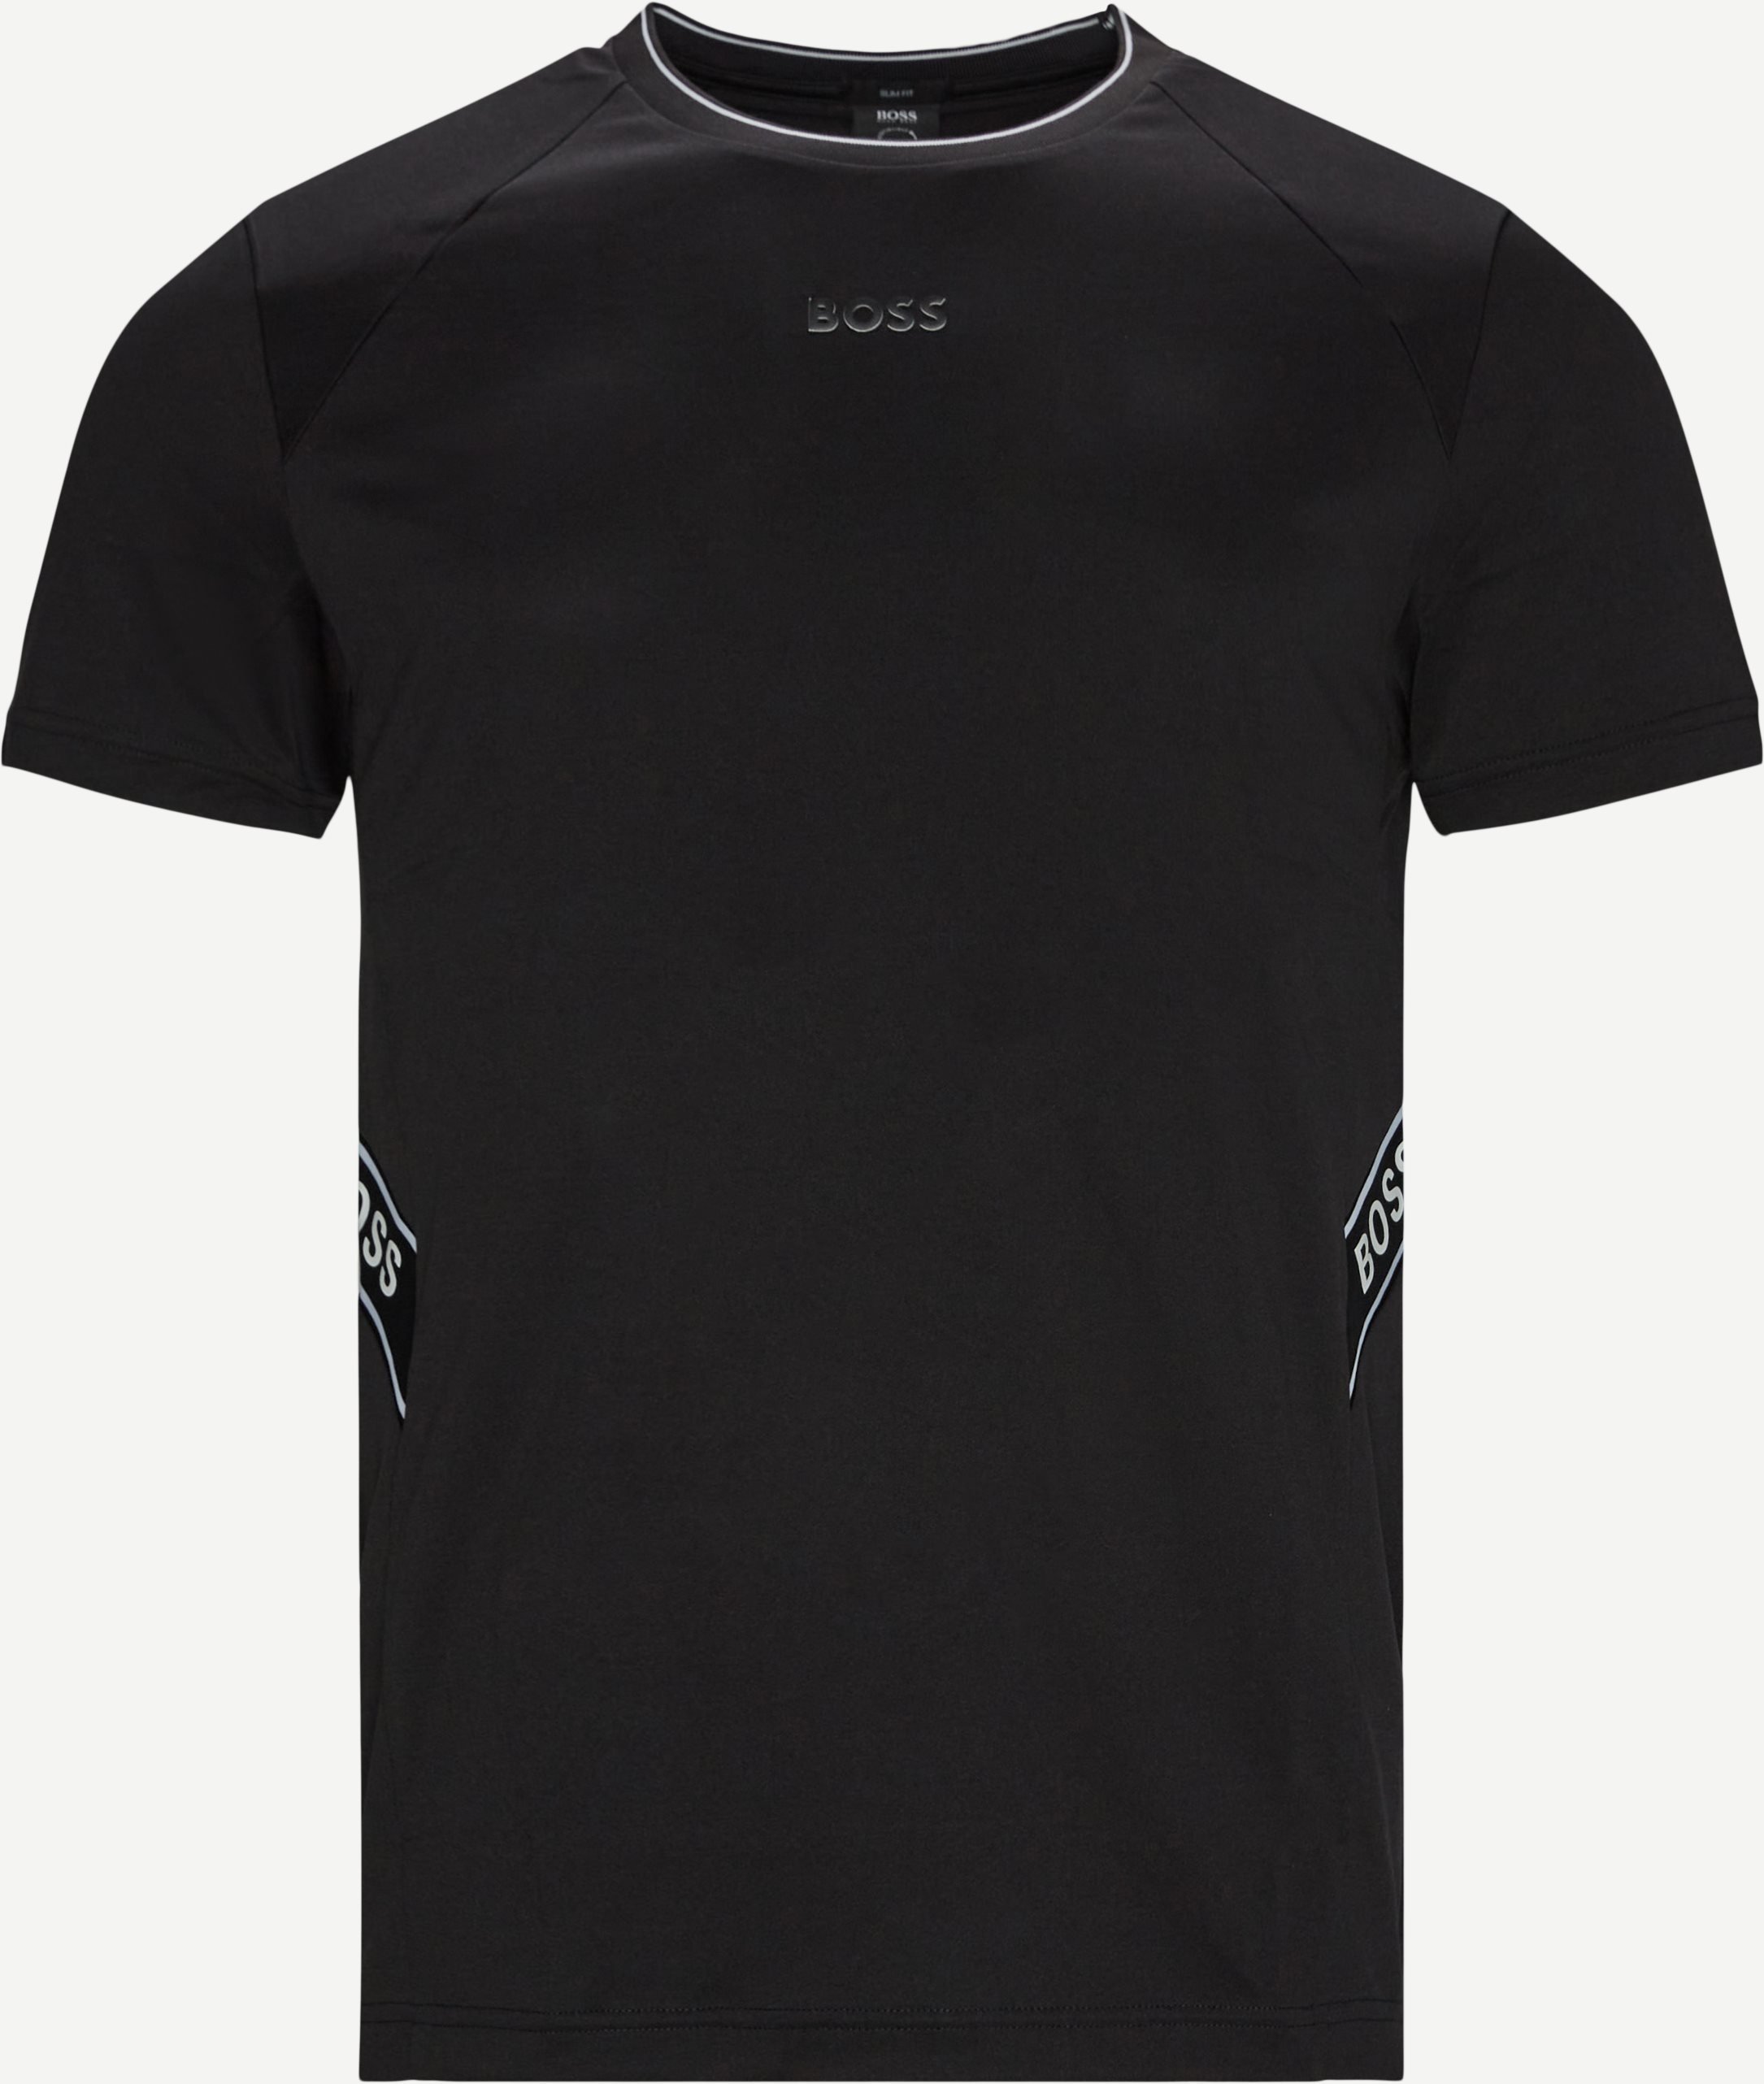 Gym Tee - T-shirts - Slim fit - Black